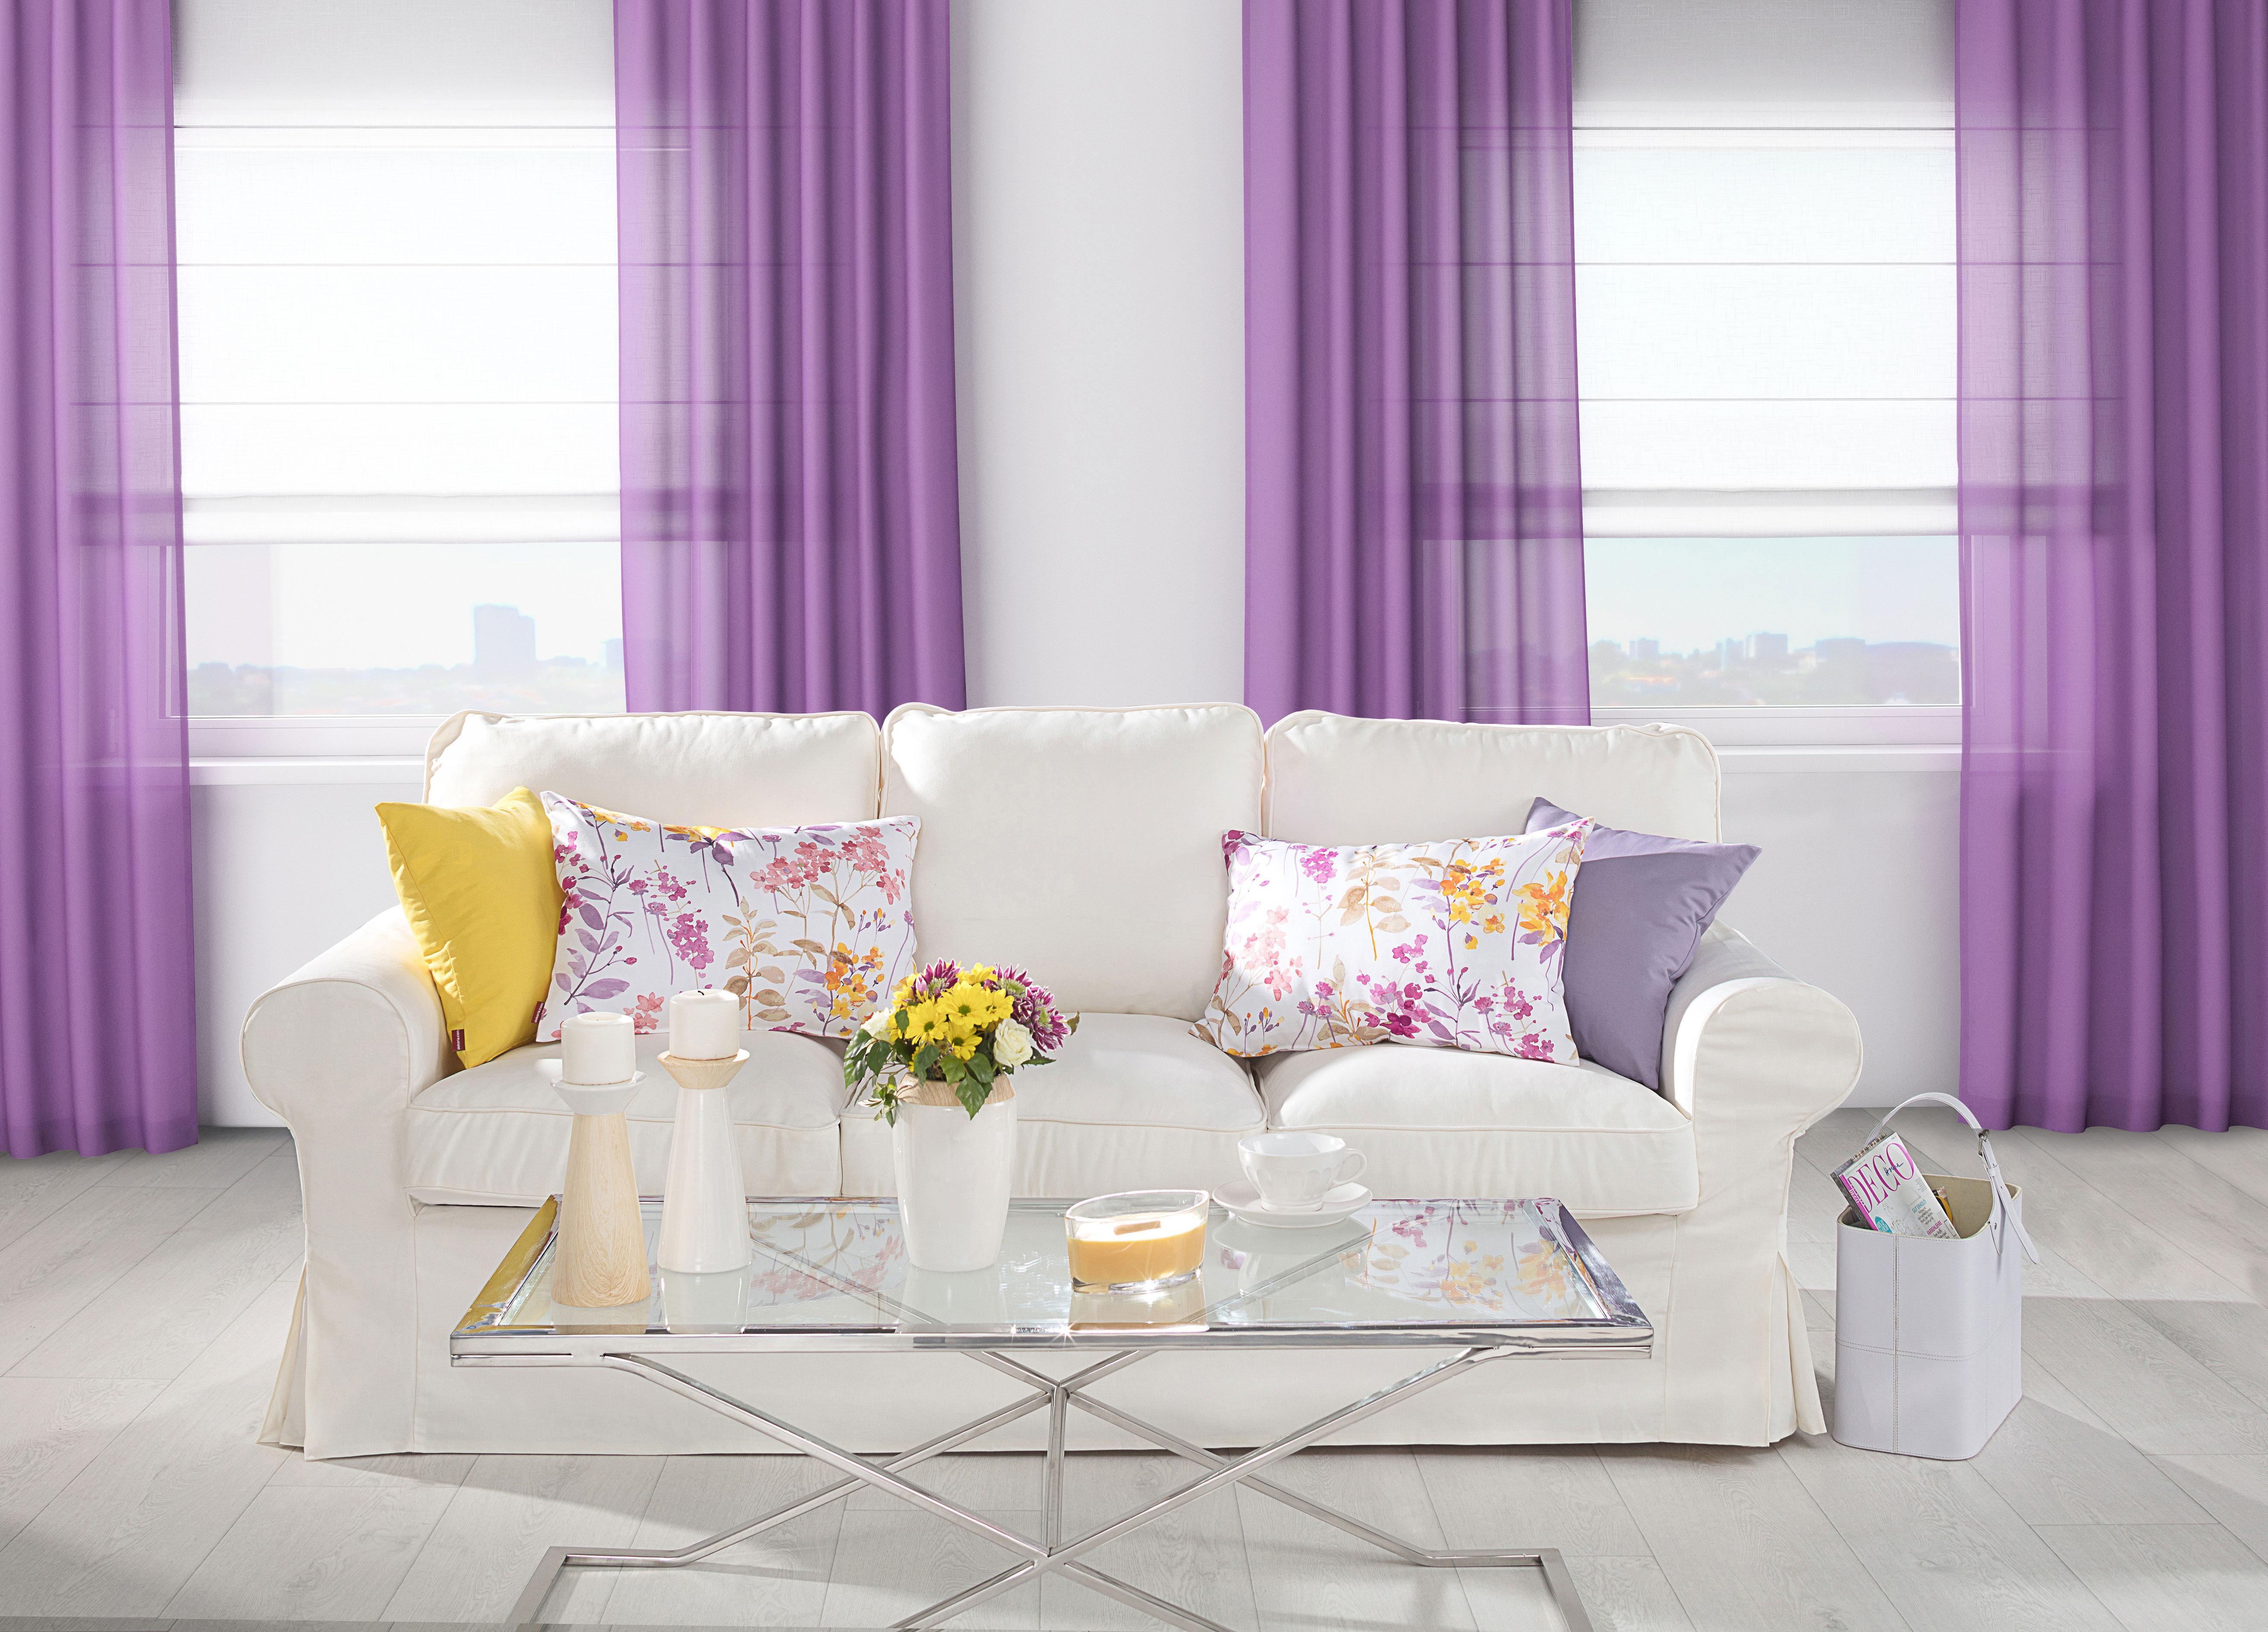 Ultra Violet - Trendfarbe
#violet #vorhang #interiordesign #wohnzimmer #livingroom #interior #einrichtung
